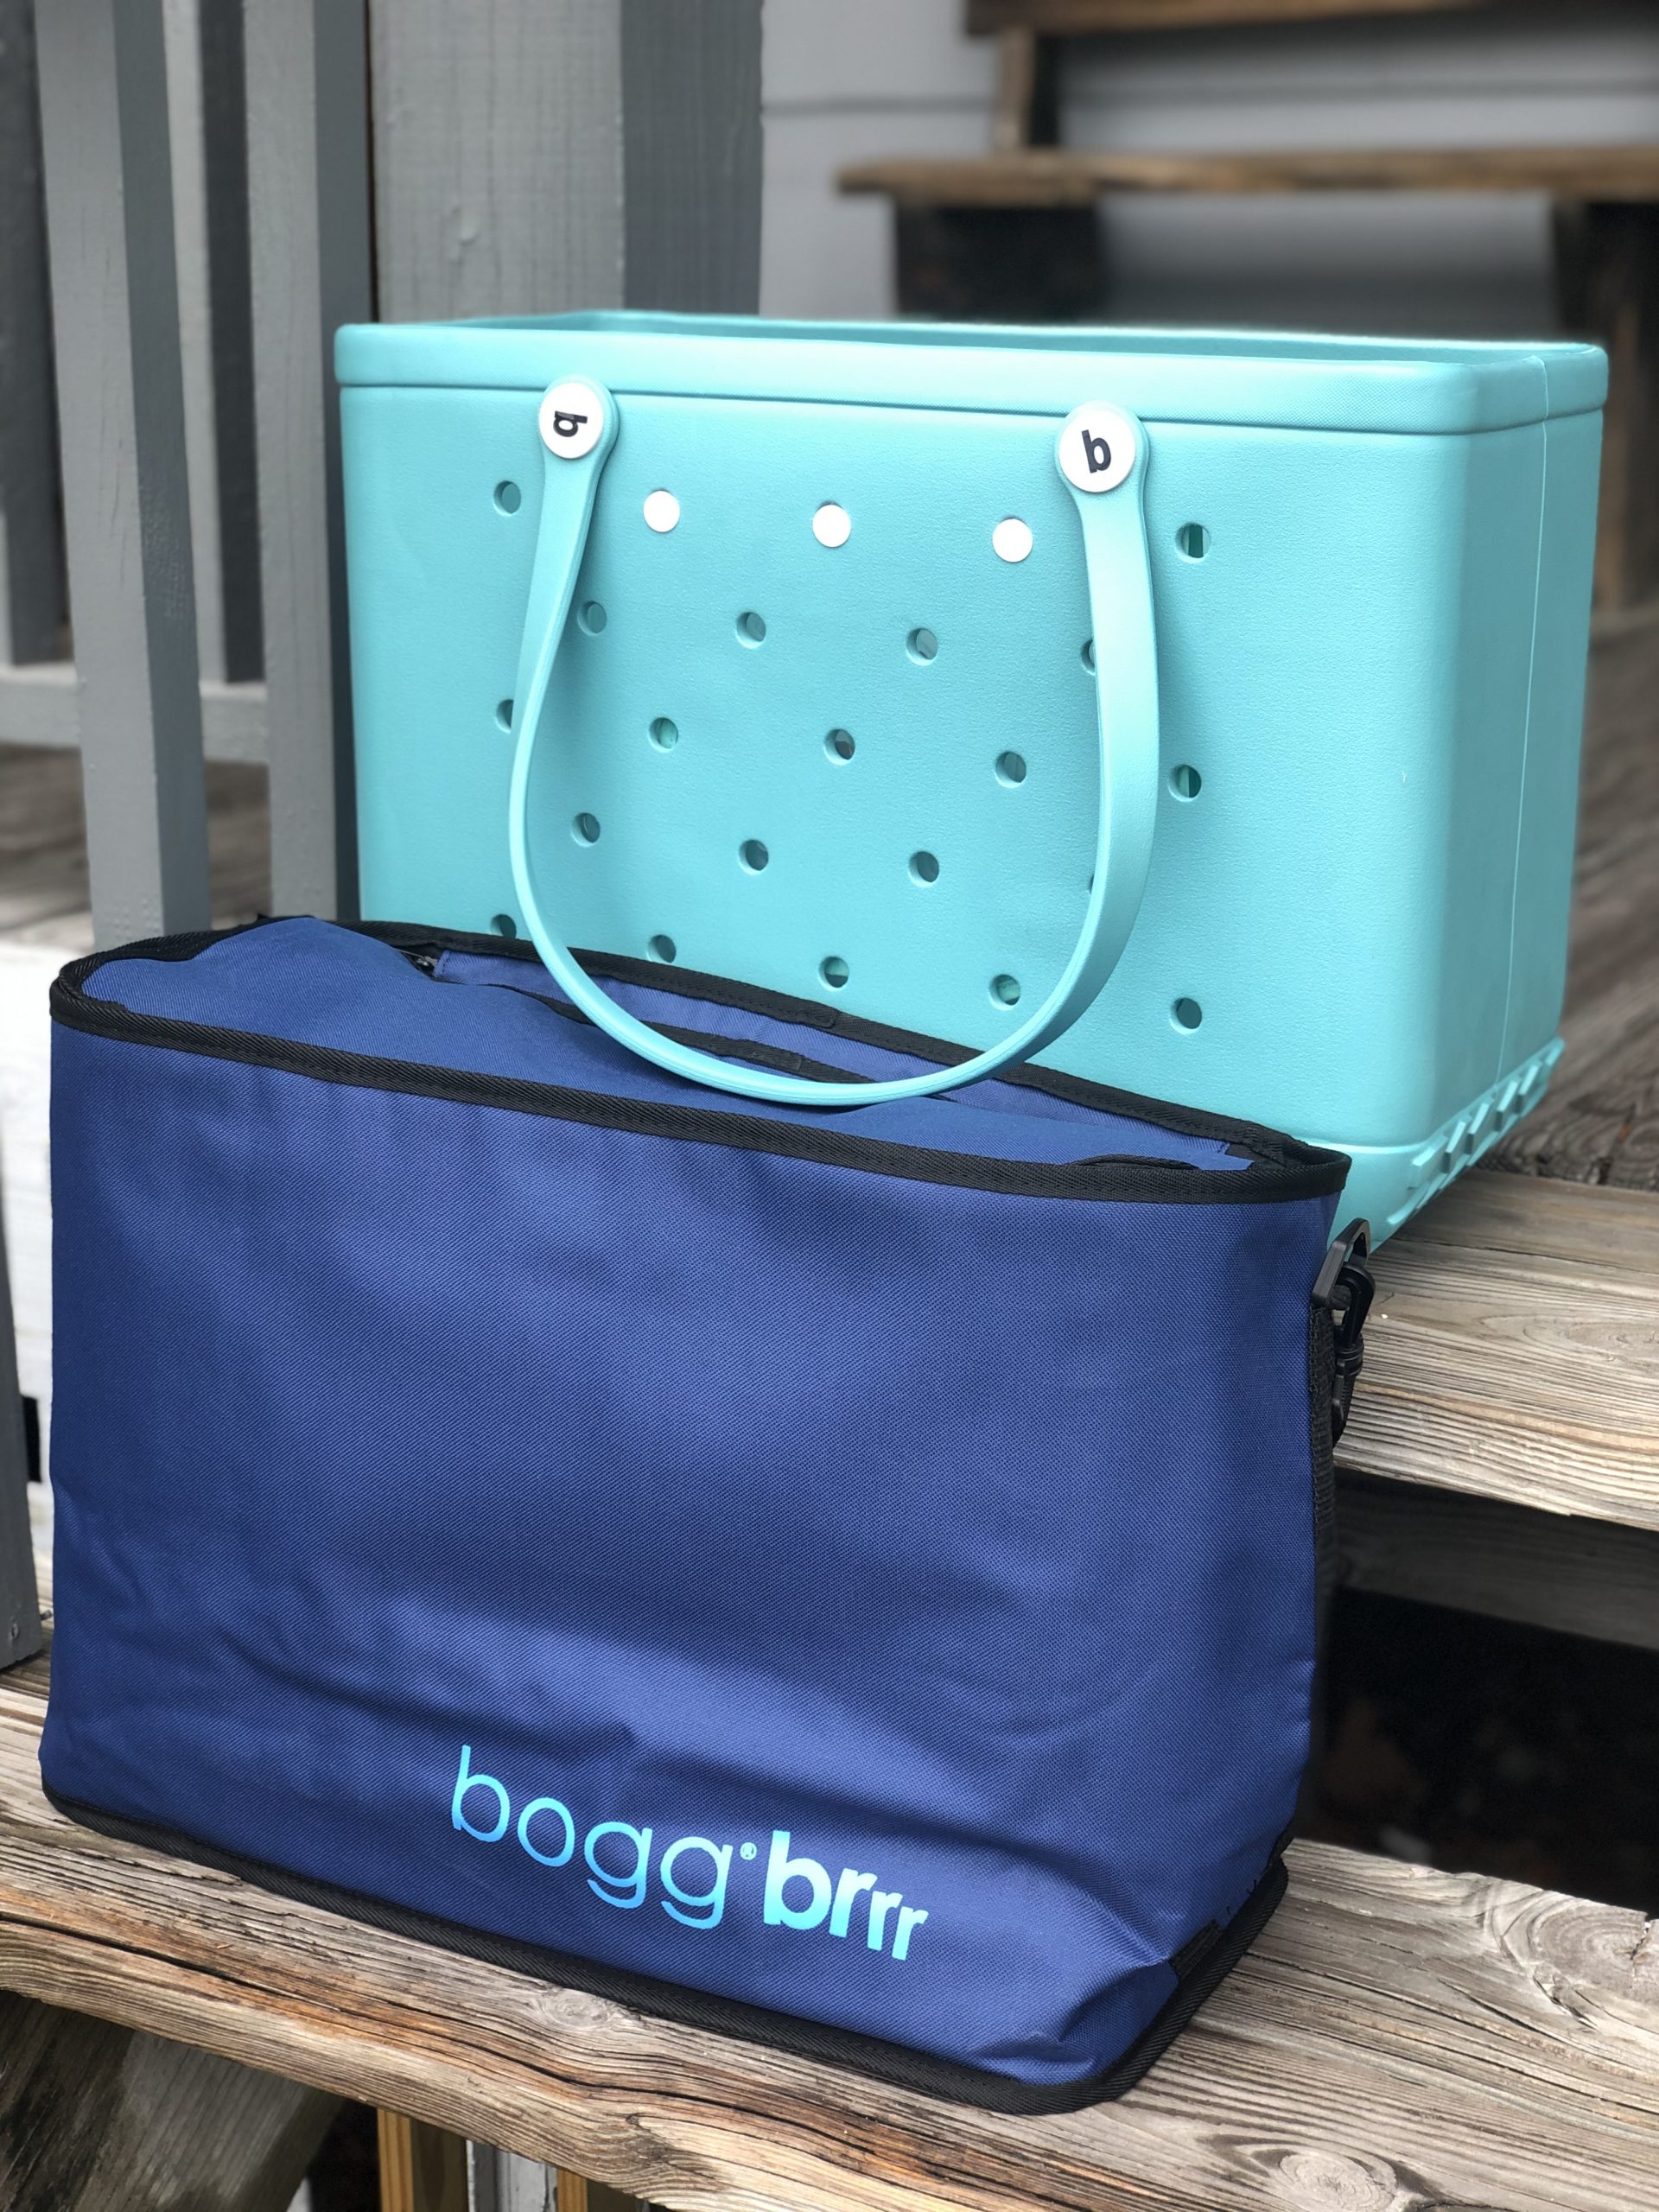 J&D Designs - BOGG BAG Brrrr, COOLER INSERTS for BOGG!